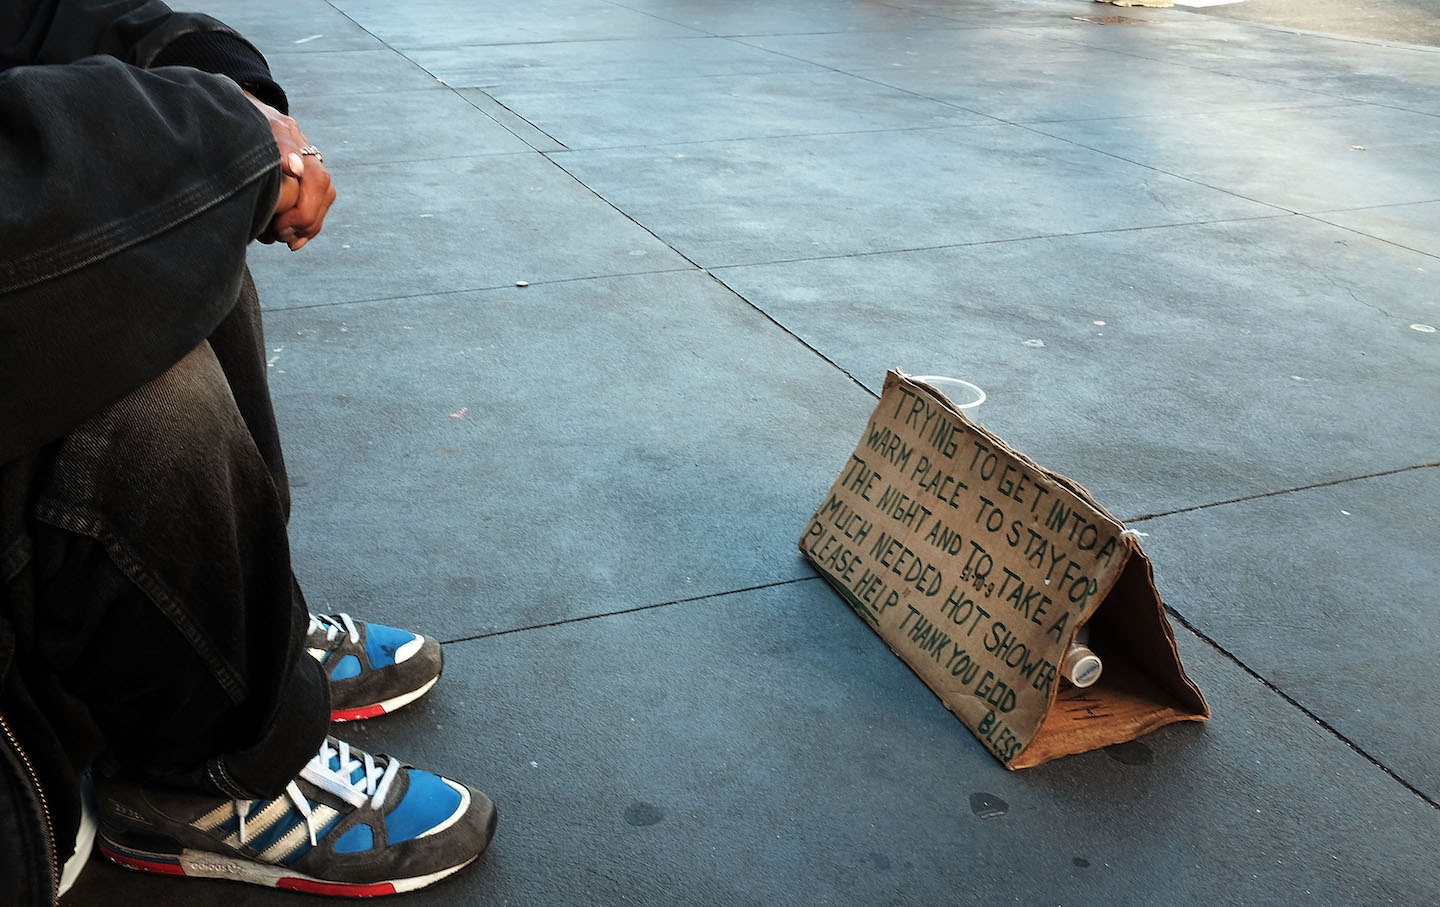 The Homeless Shelter on Billionaires’ Row